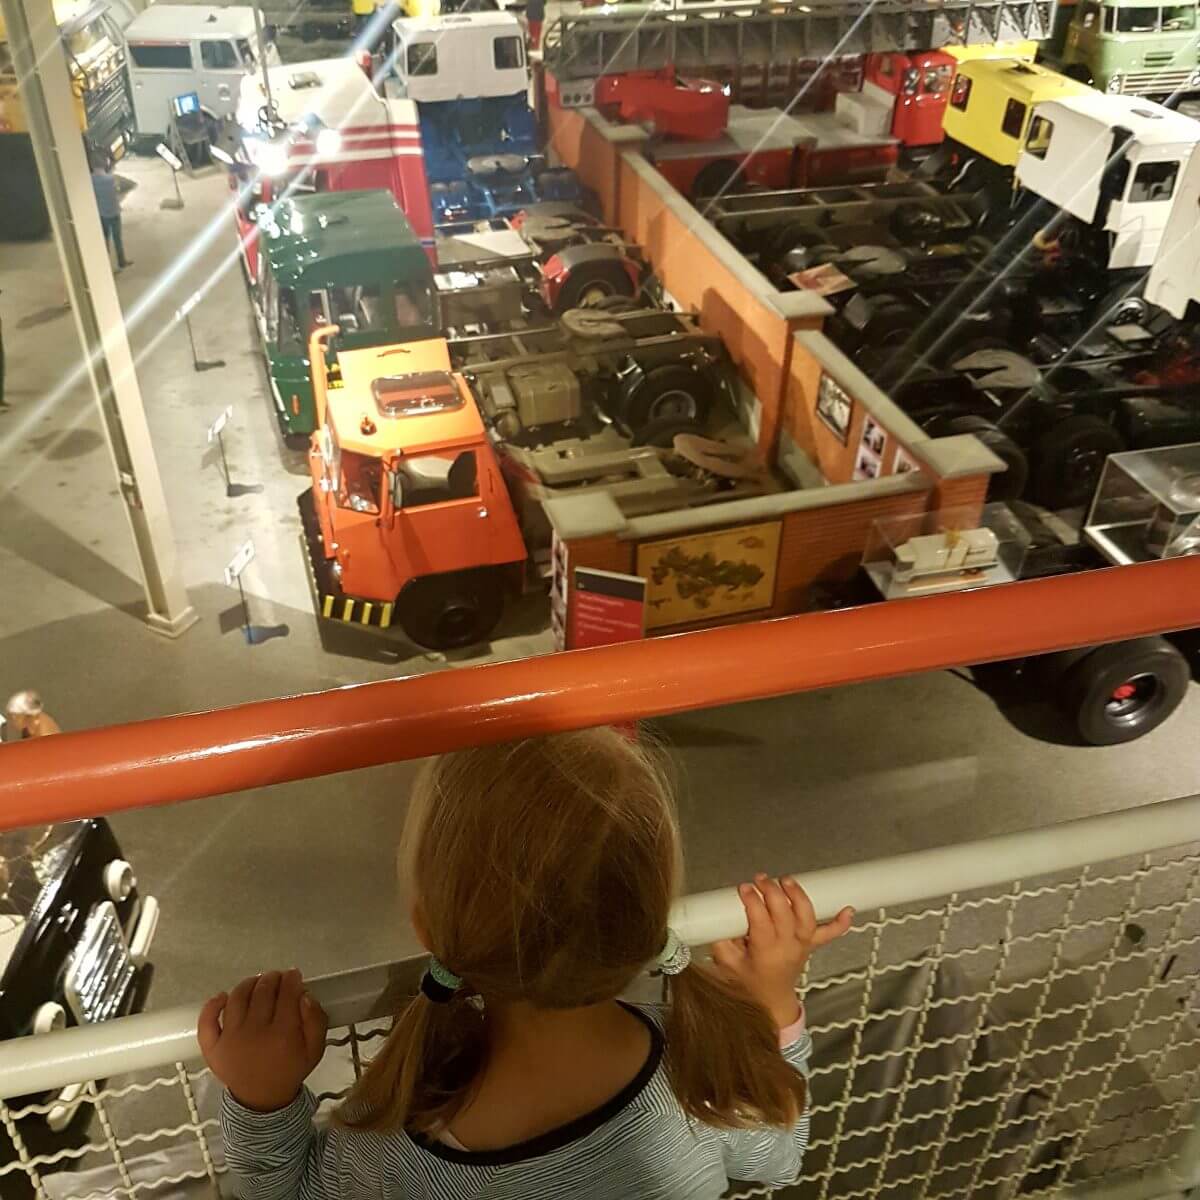 Toen we in Eindhoven waren hoorde zoonlief over het DAF Museum, waar hij absoluut heen wilde. Die grote trucks en kleine DAF autootjes bleken een groot succes.